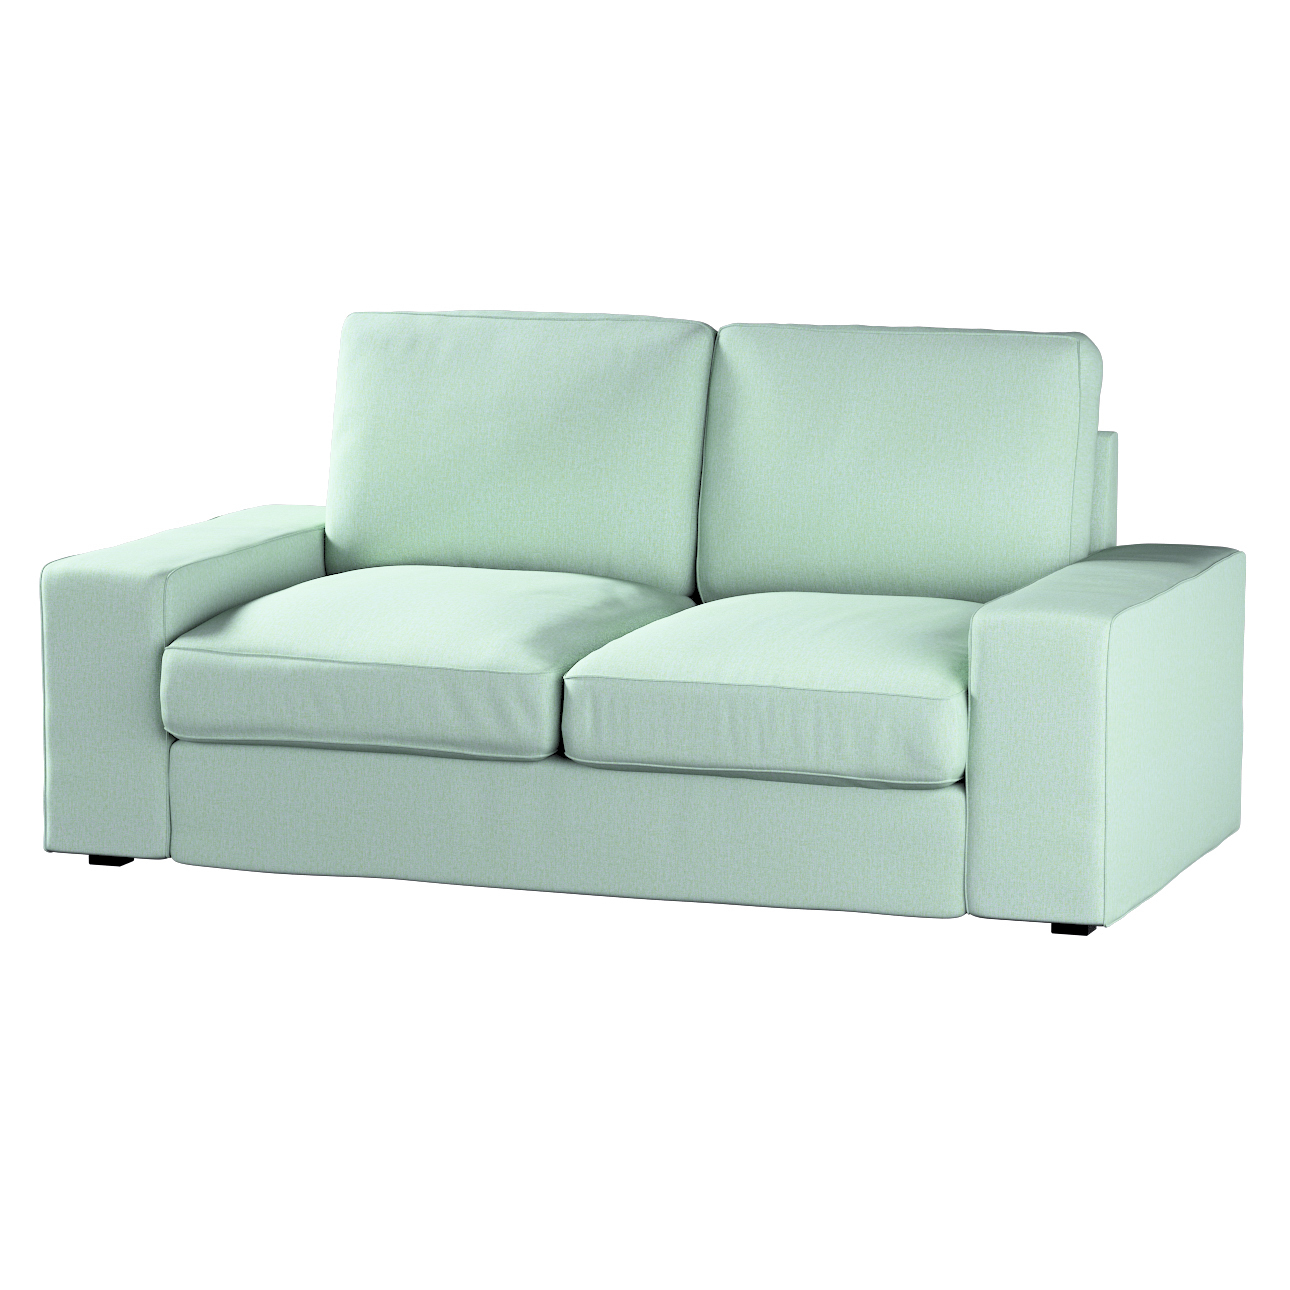 Bezug für Kivik 2-Sitzer Sofa, pastellblau, Bezug für Sofa Kivik 2-Sitzer, günstig online kaufen